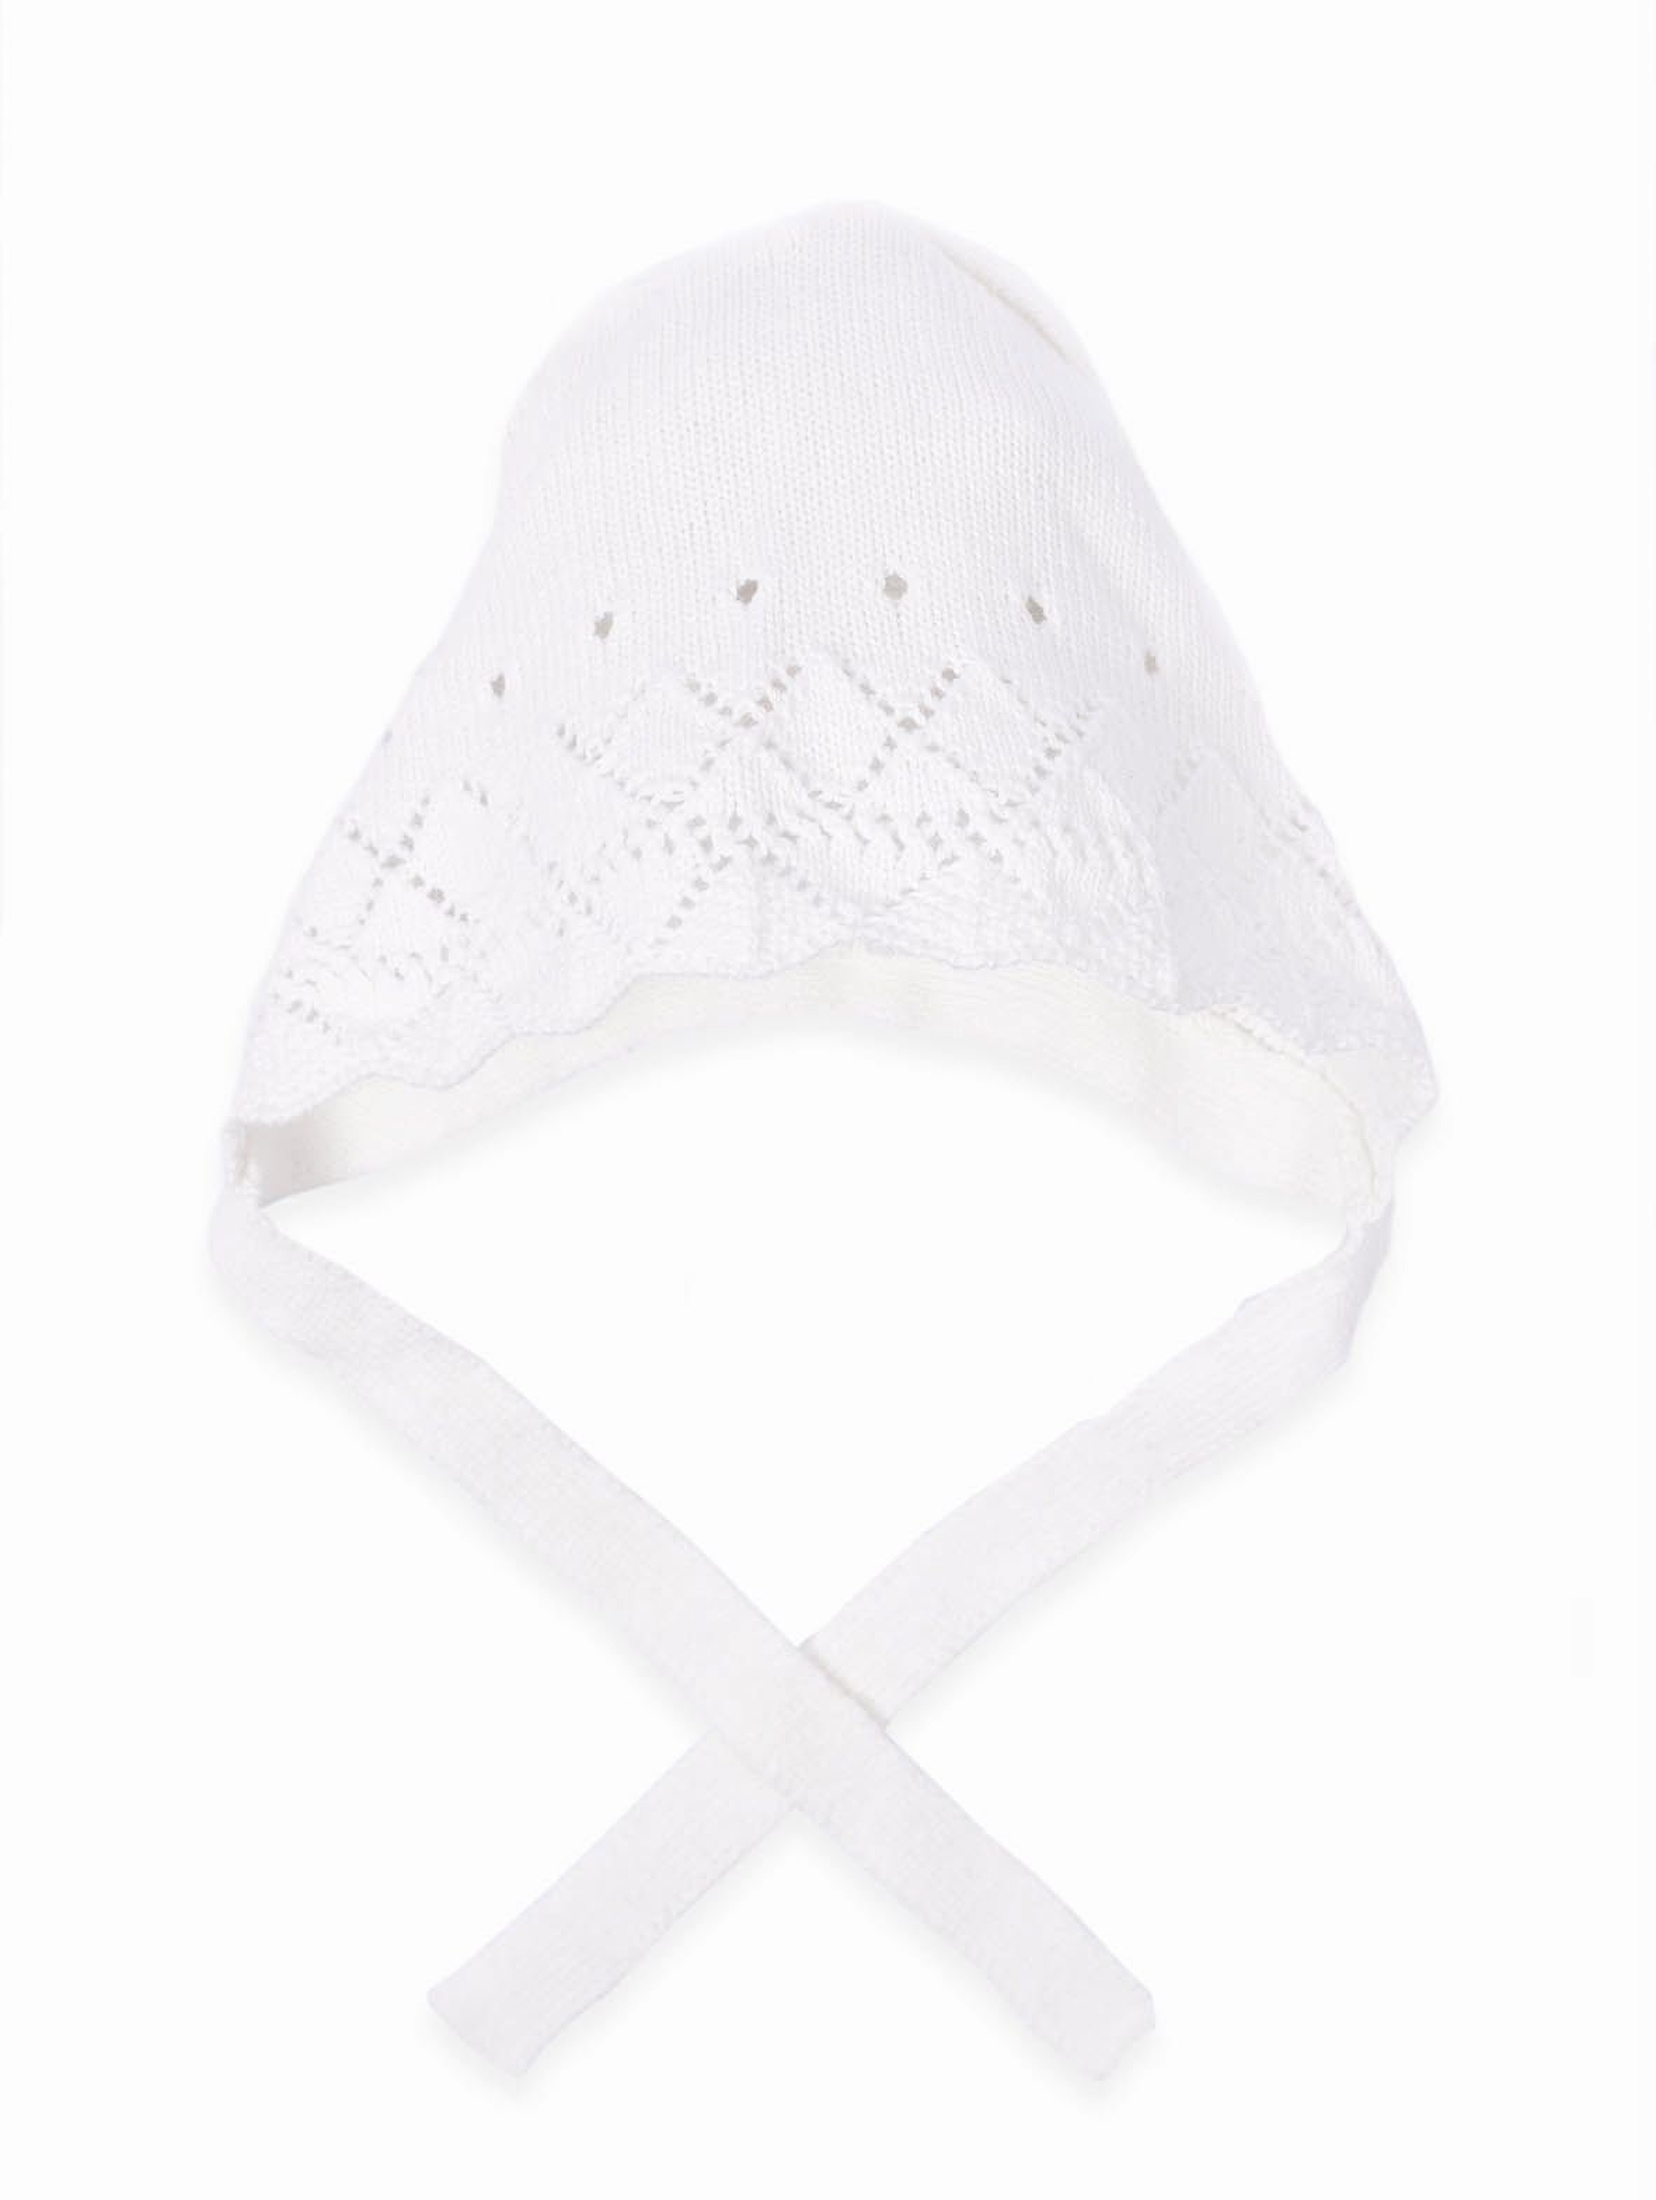 Biała czapeczka niemowlęca z ażurowym wzorem